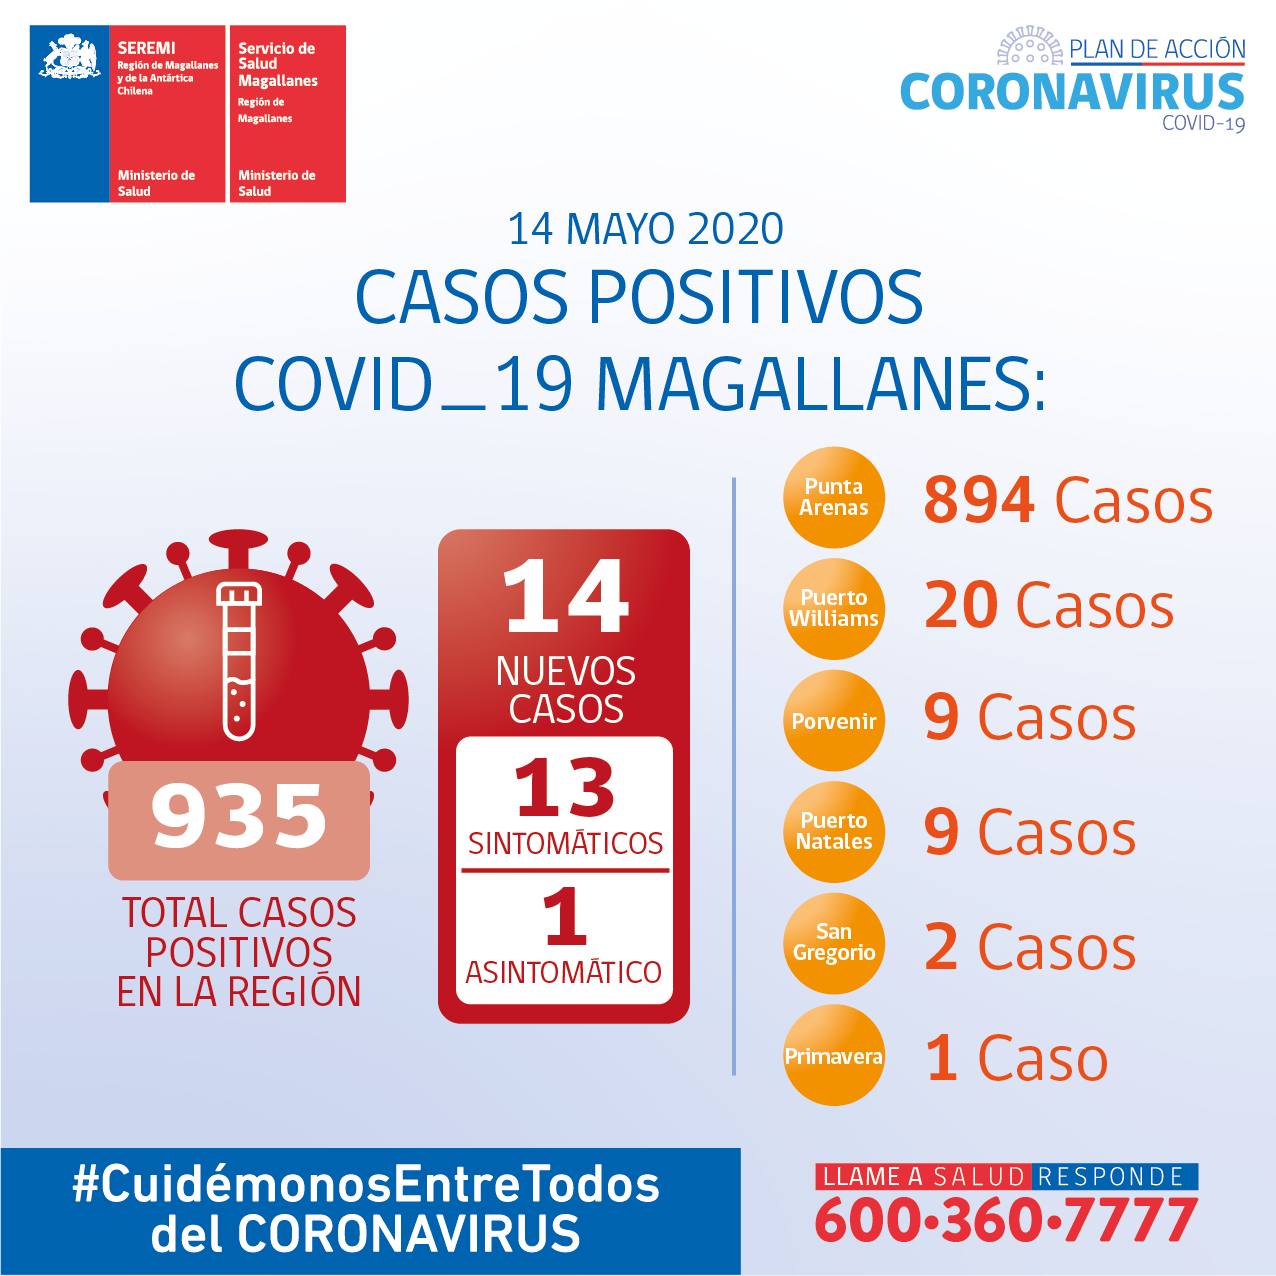 14 nuevos casos de Covid19 hoy jueves 14 de mayo en Magallanes: 935 casos en total den la región